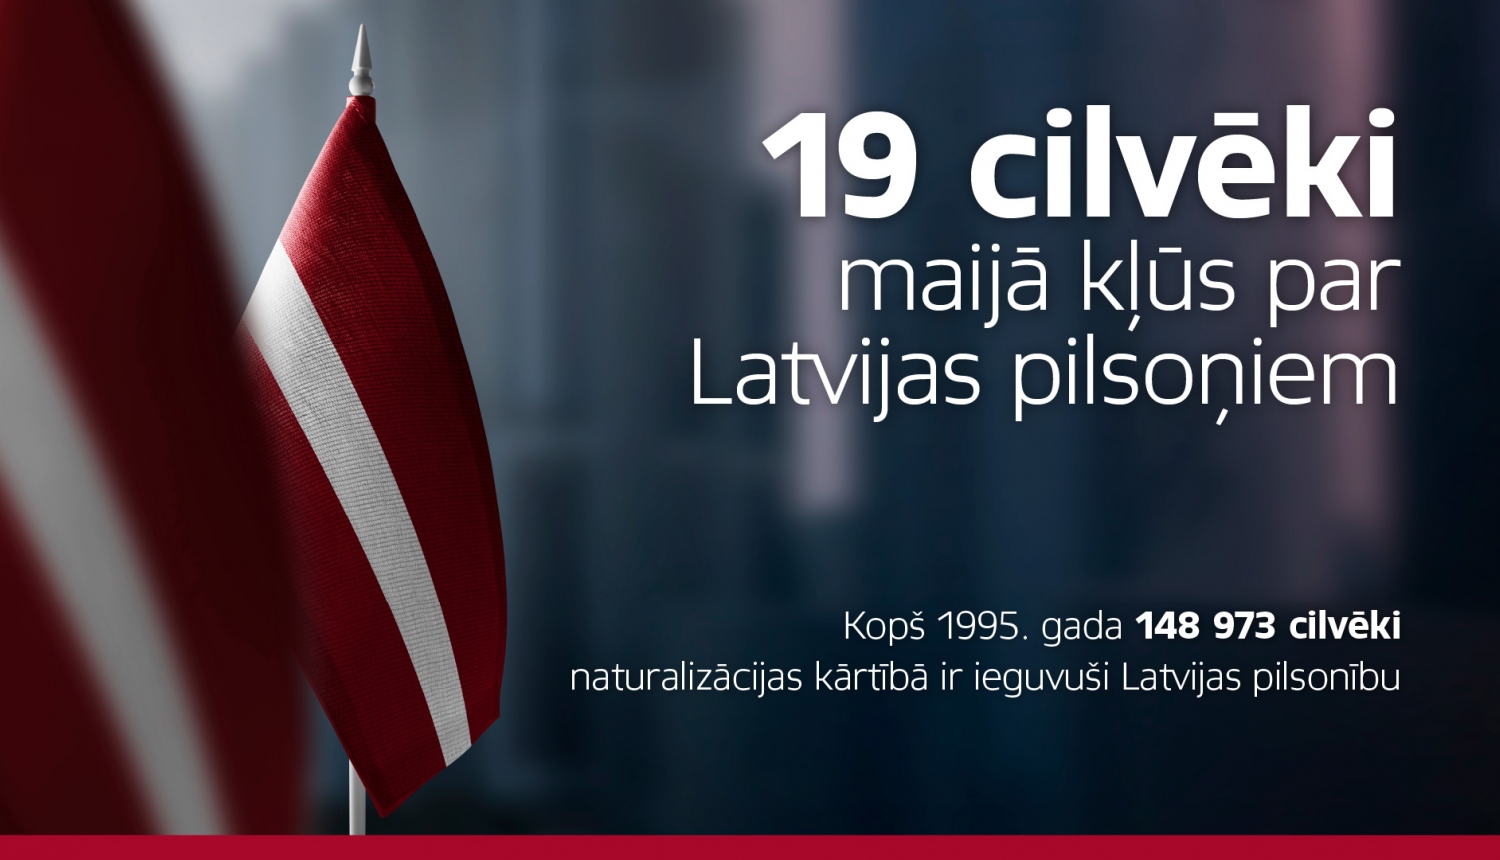 19 cilvēki maijā kļūst par Latvijas pilsoņiem